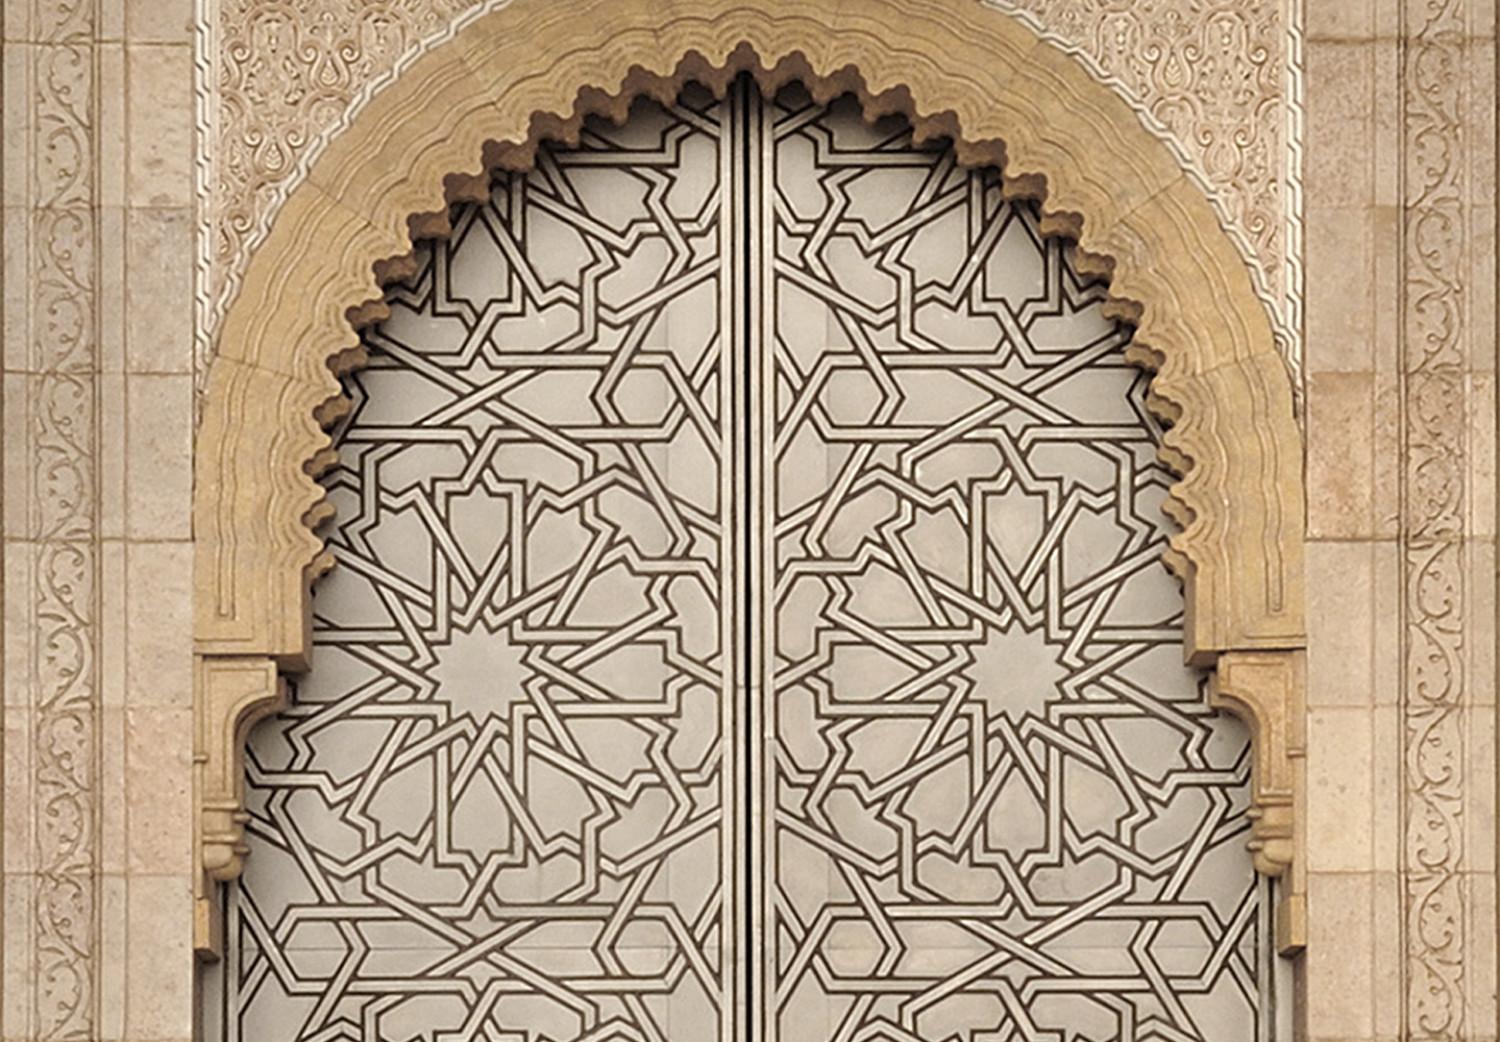 Cuadro Puertas palacio (1 pieza) vertical - en Marruecos